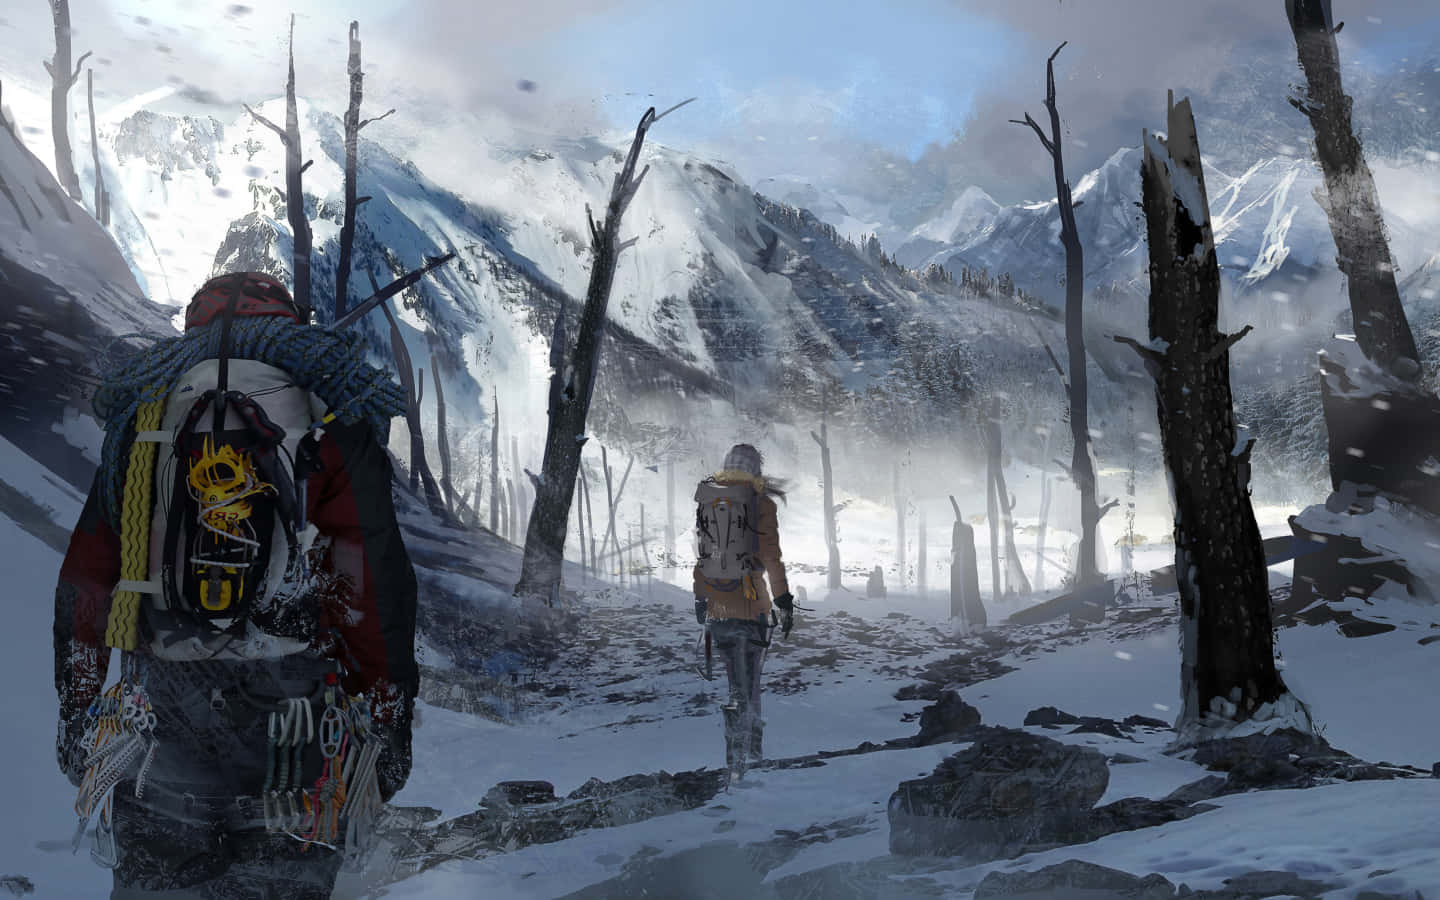 Laracroft Si Unisce A Una Spedizione Nel Profondo Delle Terre Selvagge Della Siberia In Rise Of The Tomb Raider.